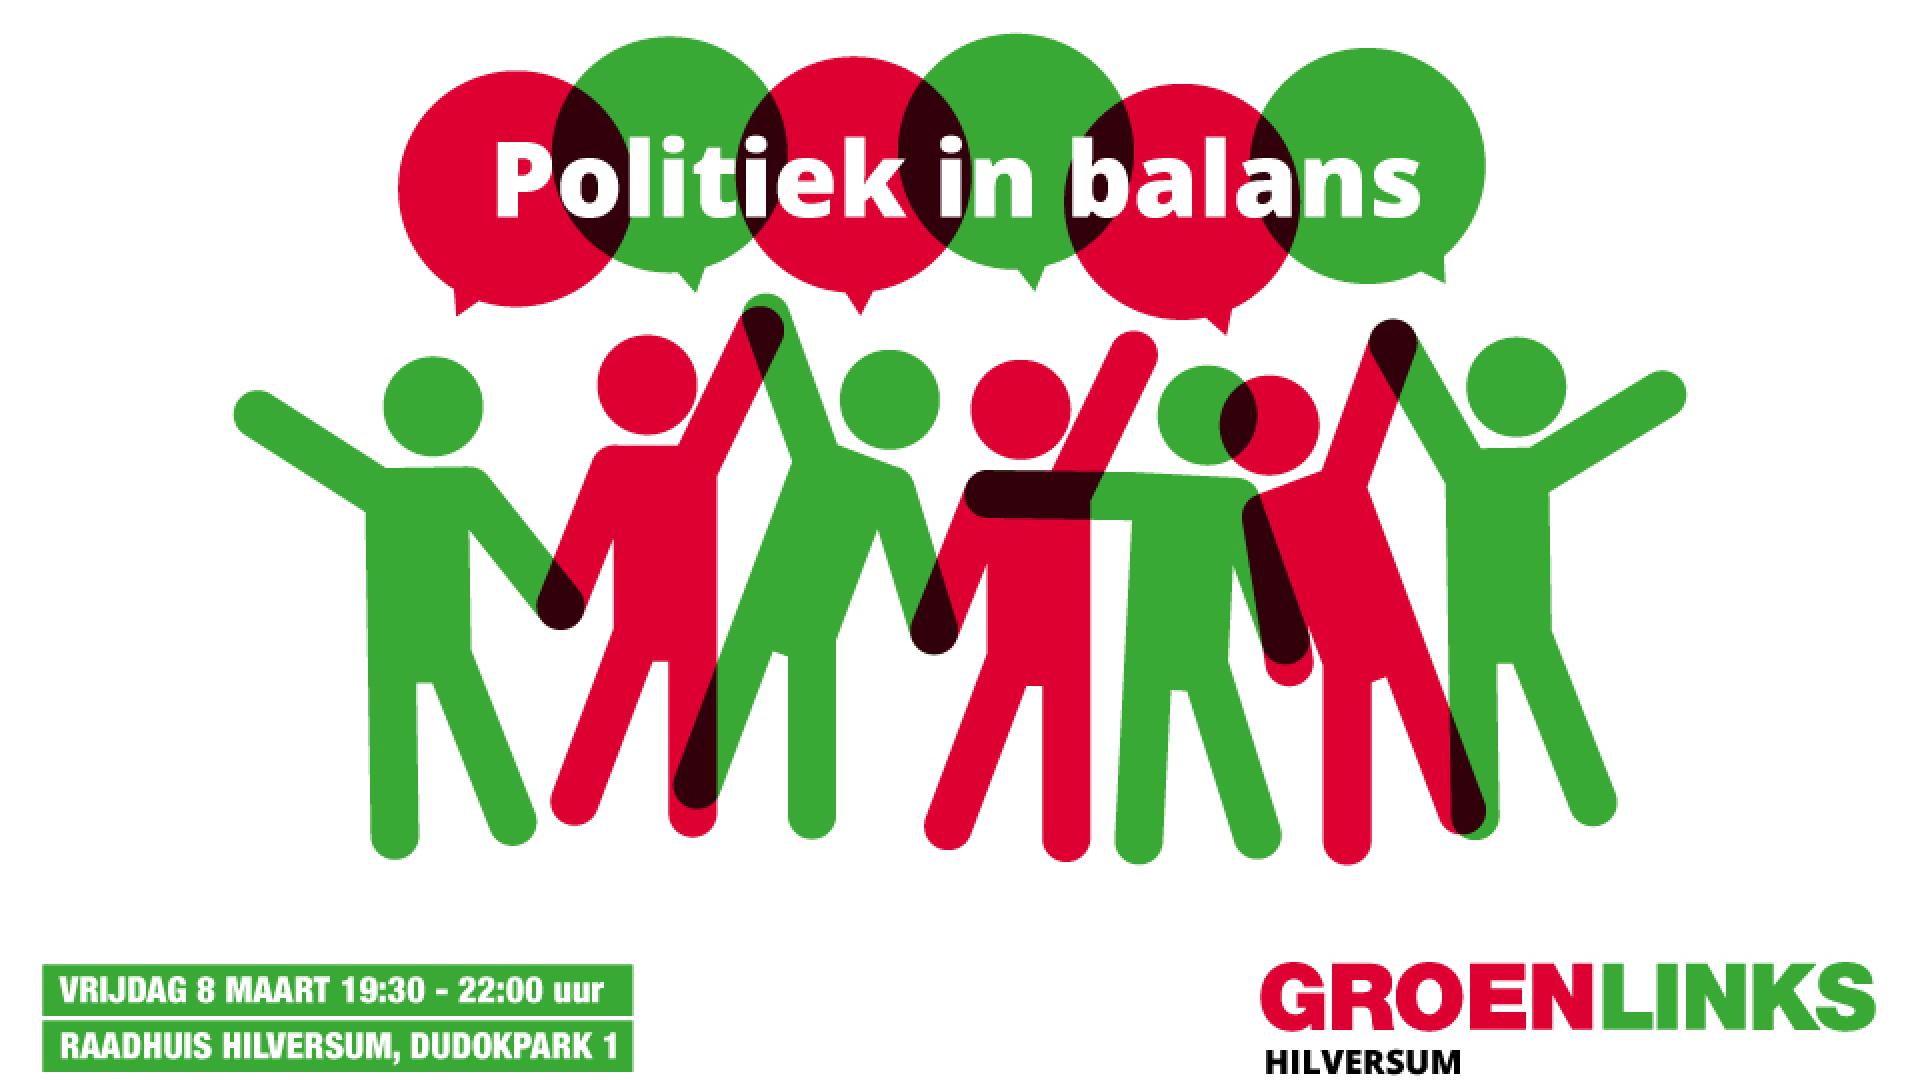 Politiek_in_balans3.jpg